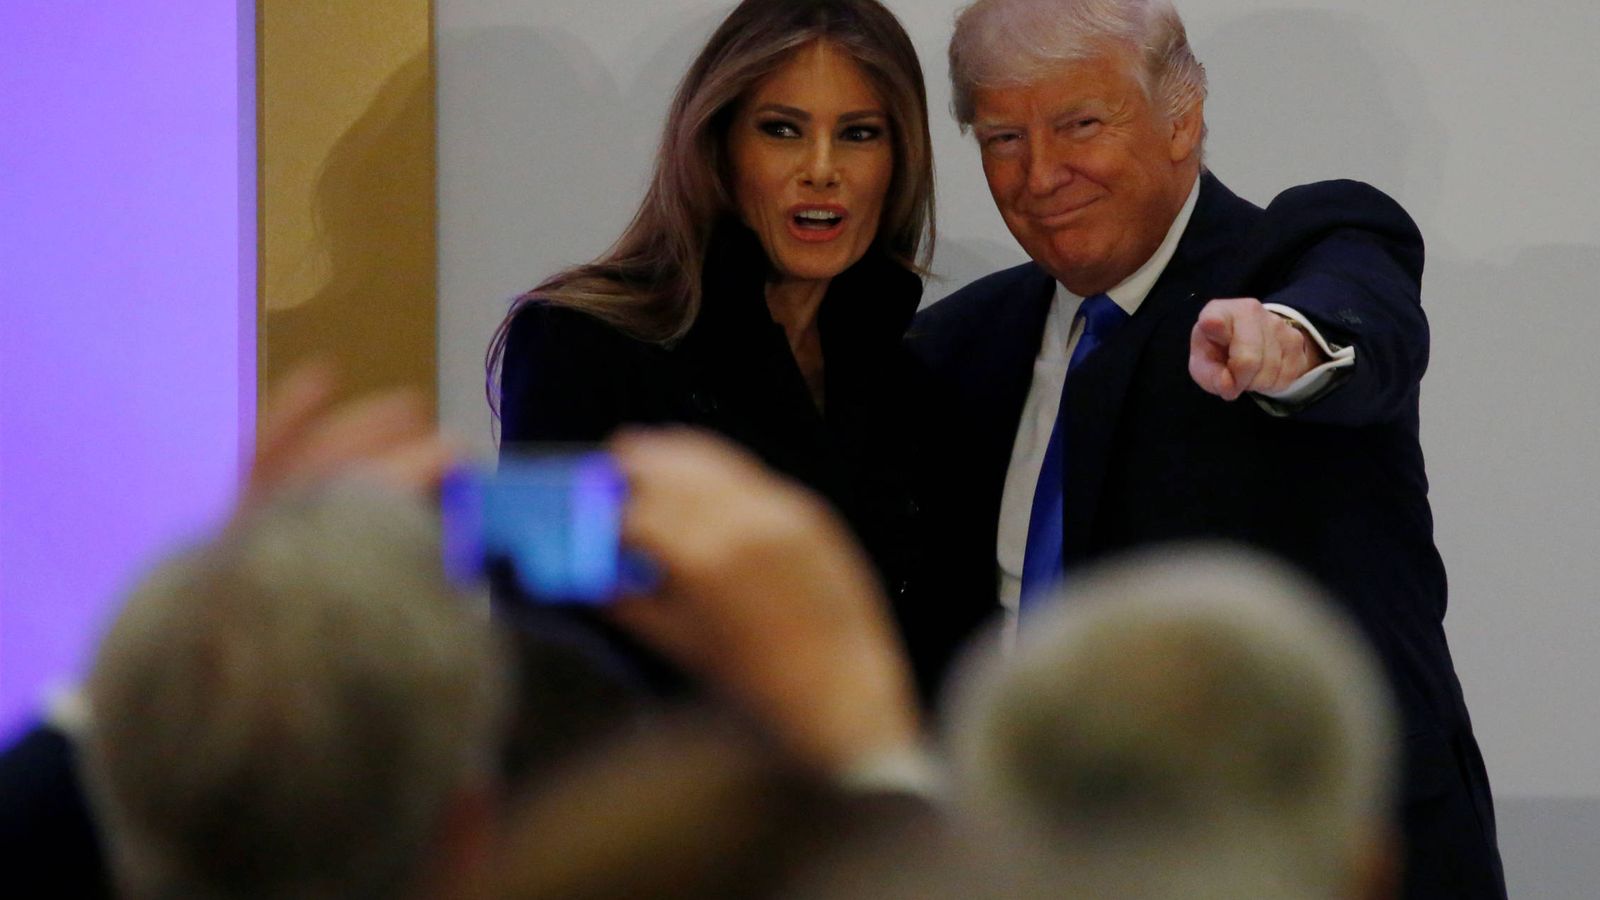 Foto: Donald Trump presenta a su esposa, Melania, antes de dirigirse a los presentes en un almuerzo, en Washington, el 19 de enero de 2017. (Reuters)